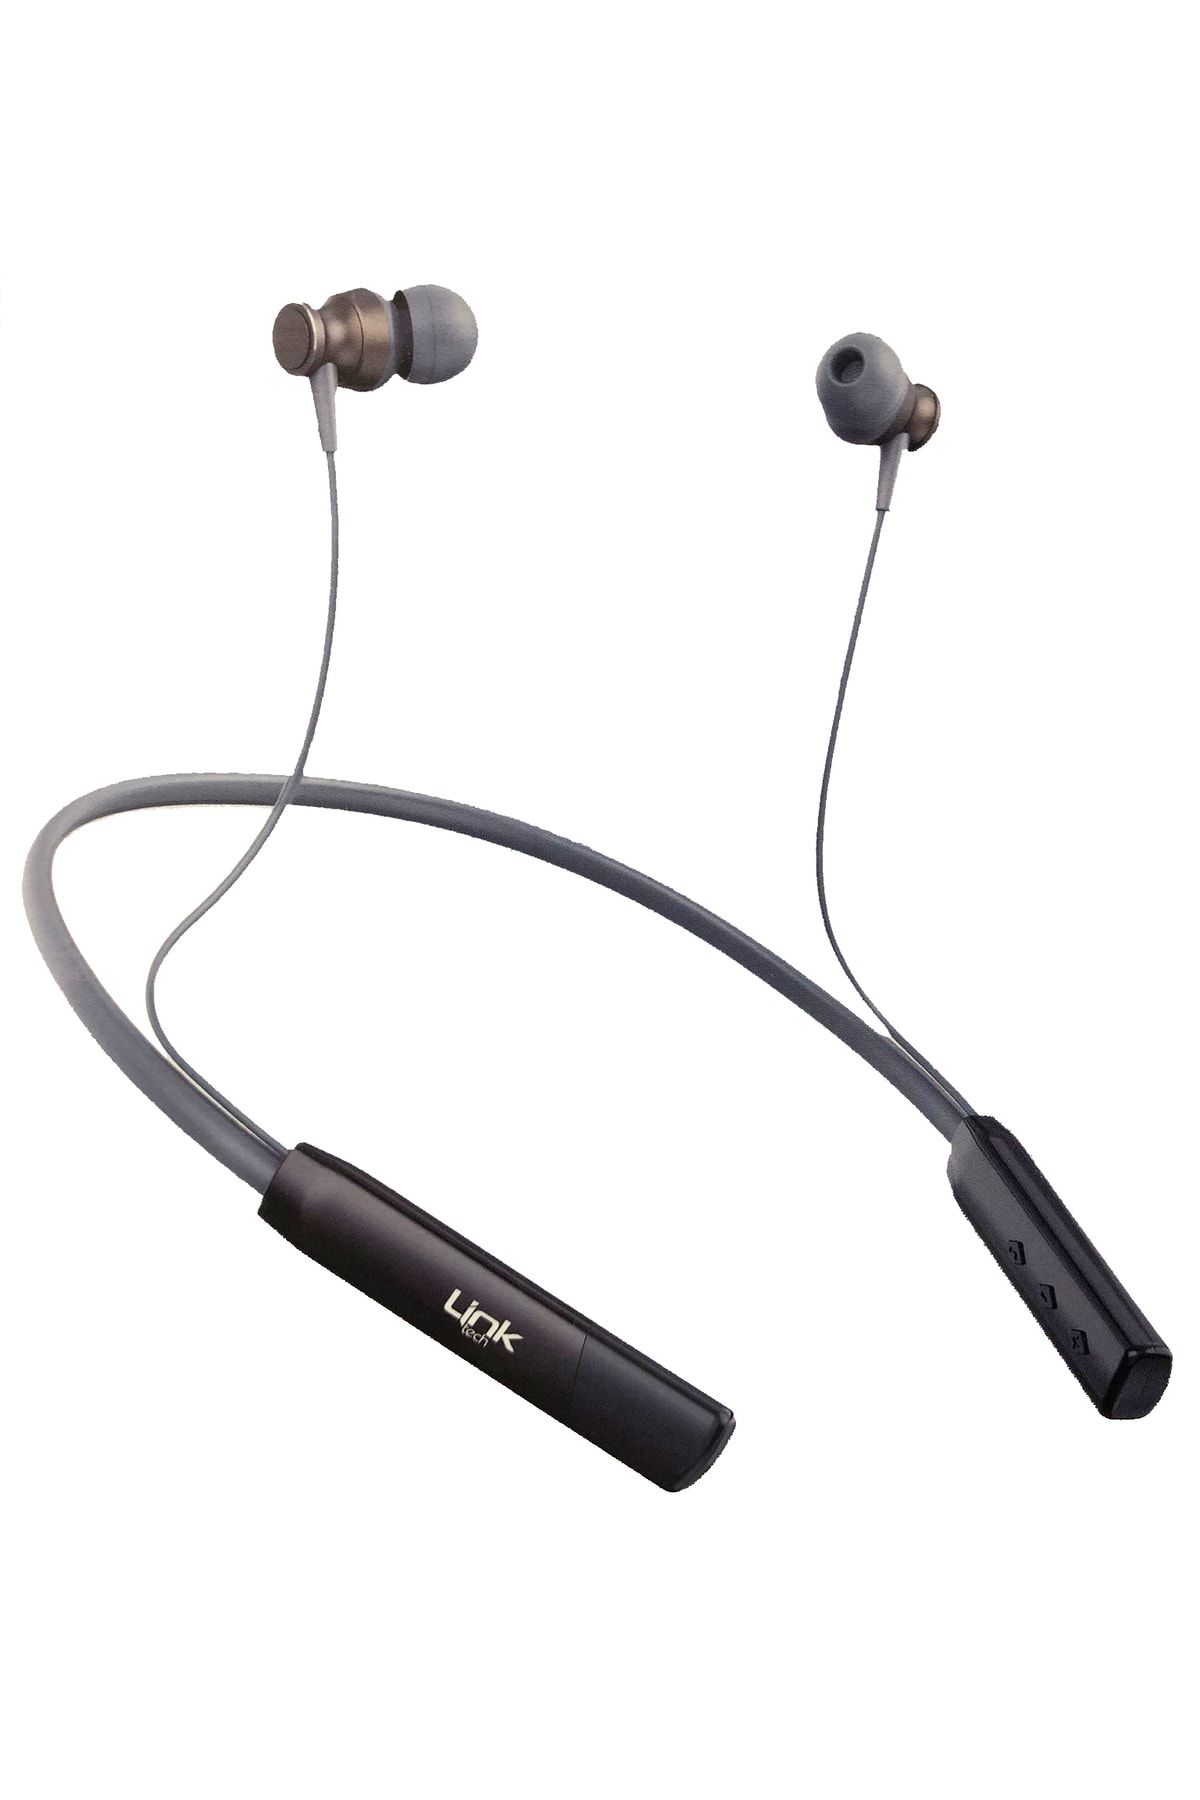 Linktech H992 Boyun Askılı Kulak İçi Bluetooth Kulaklık 17 Saat Konuşma